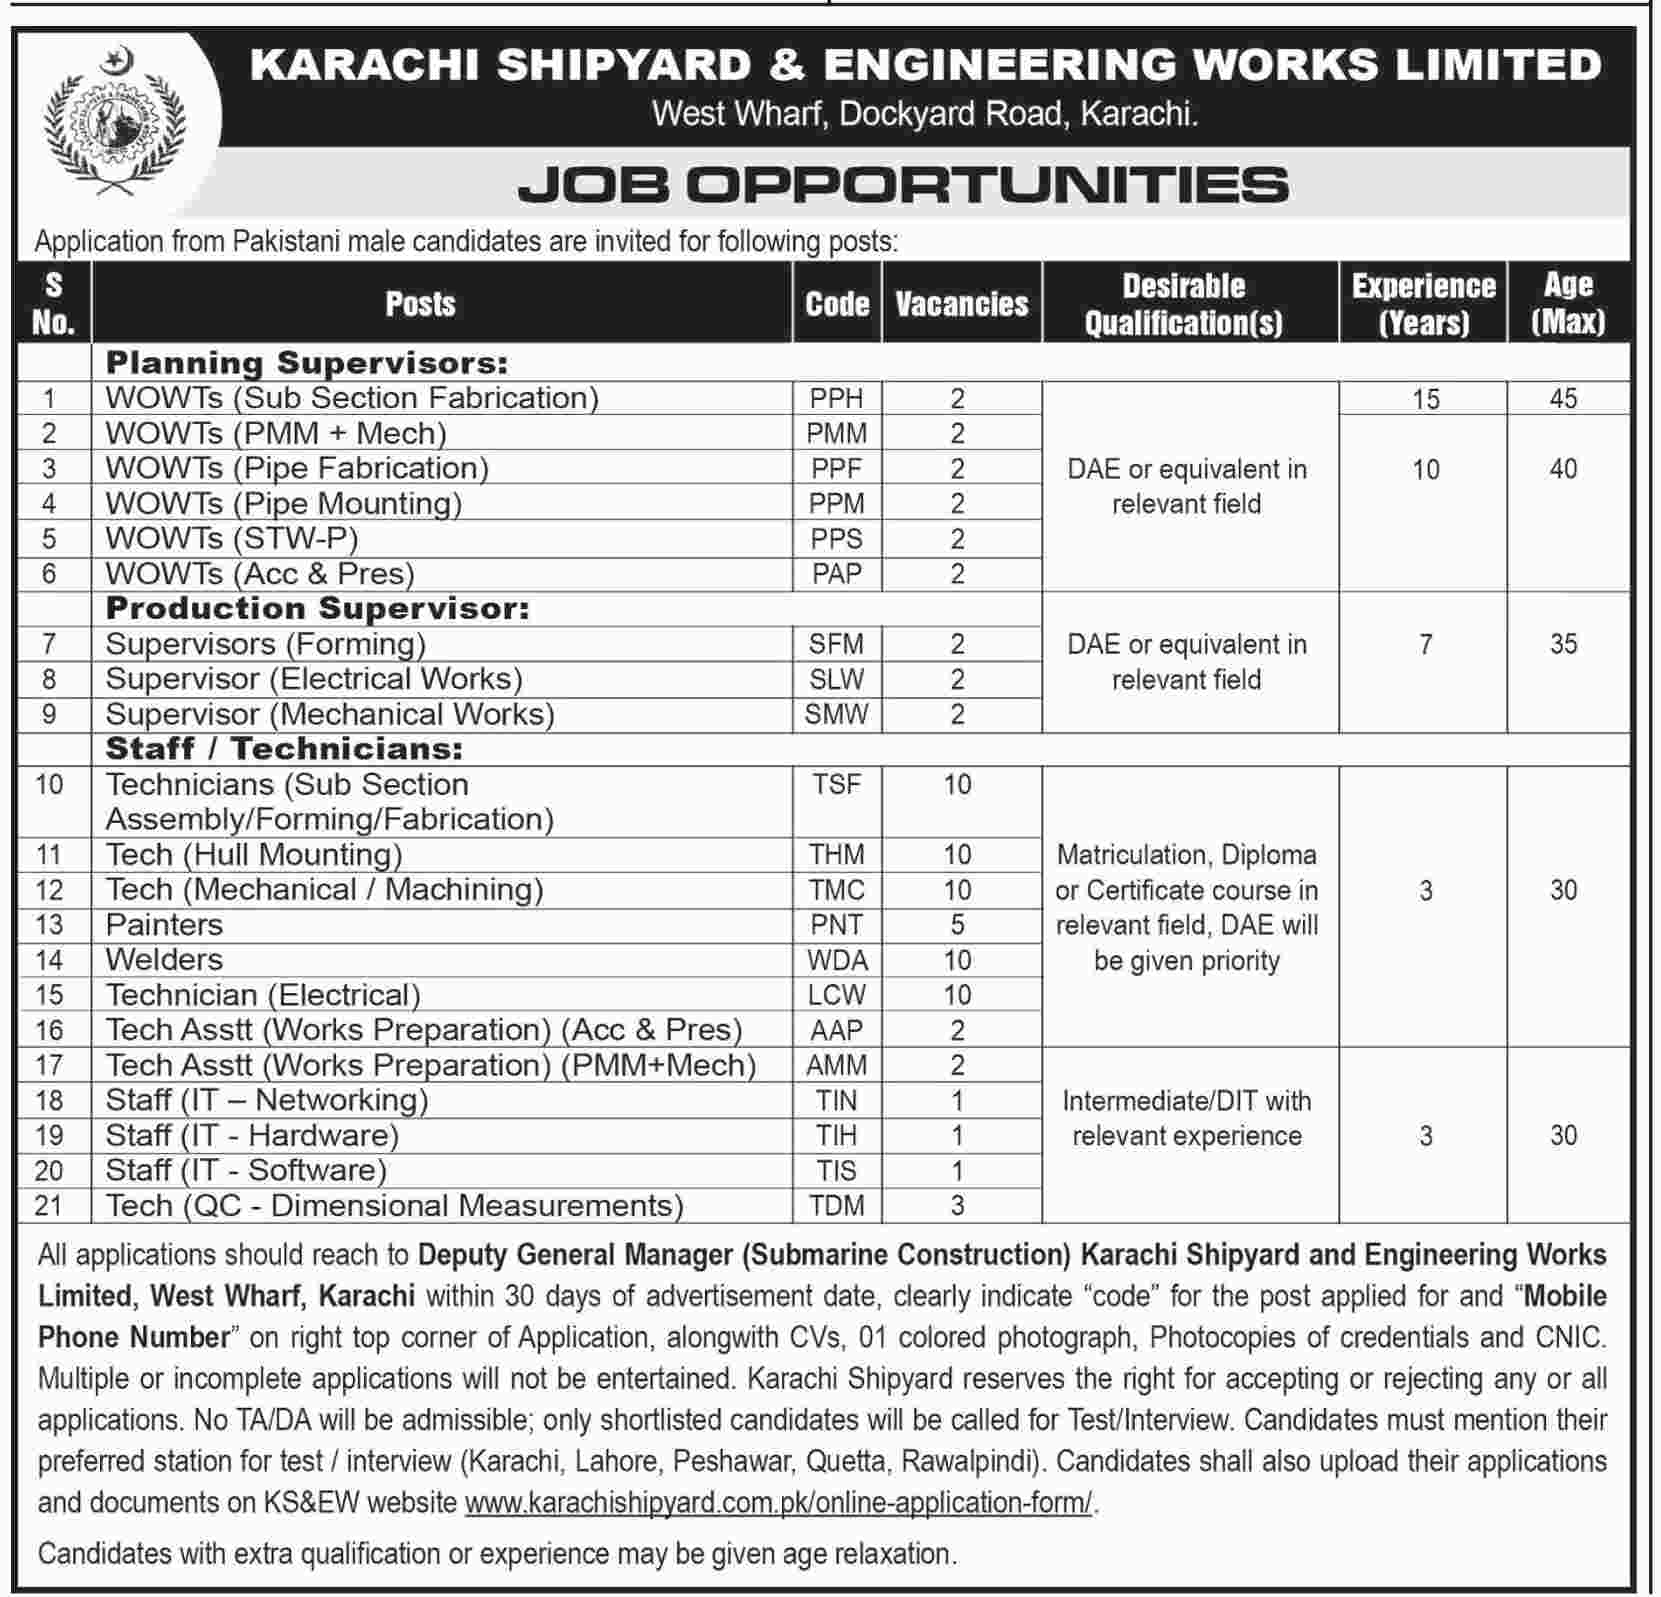 Jobs in Karachi Shipyard & Engineering Works 10 June 2018